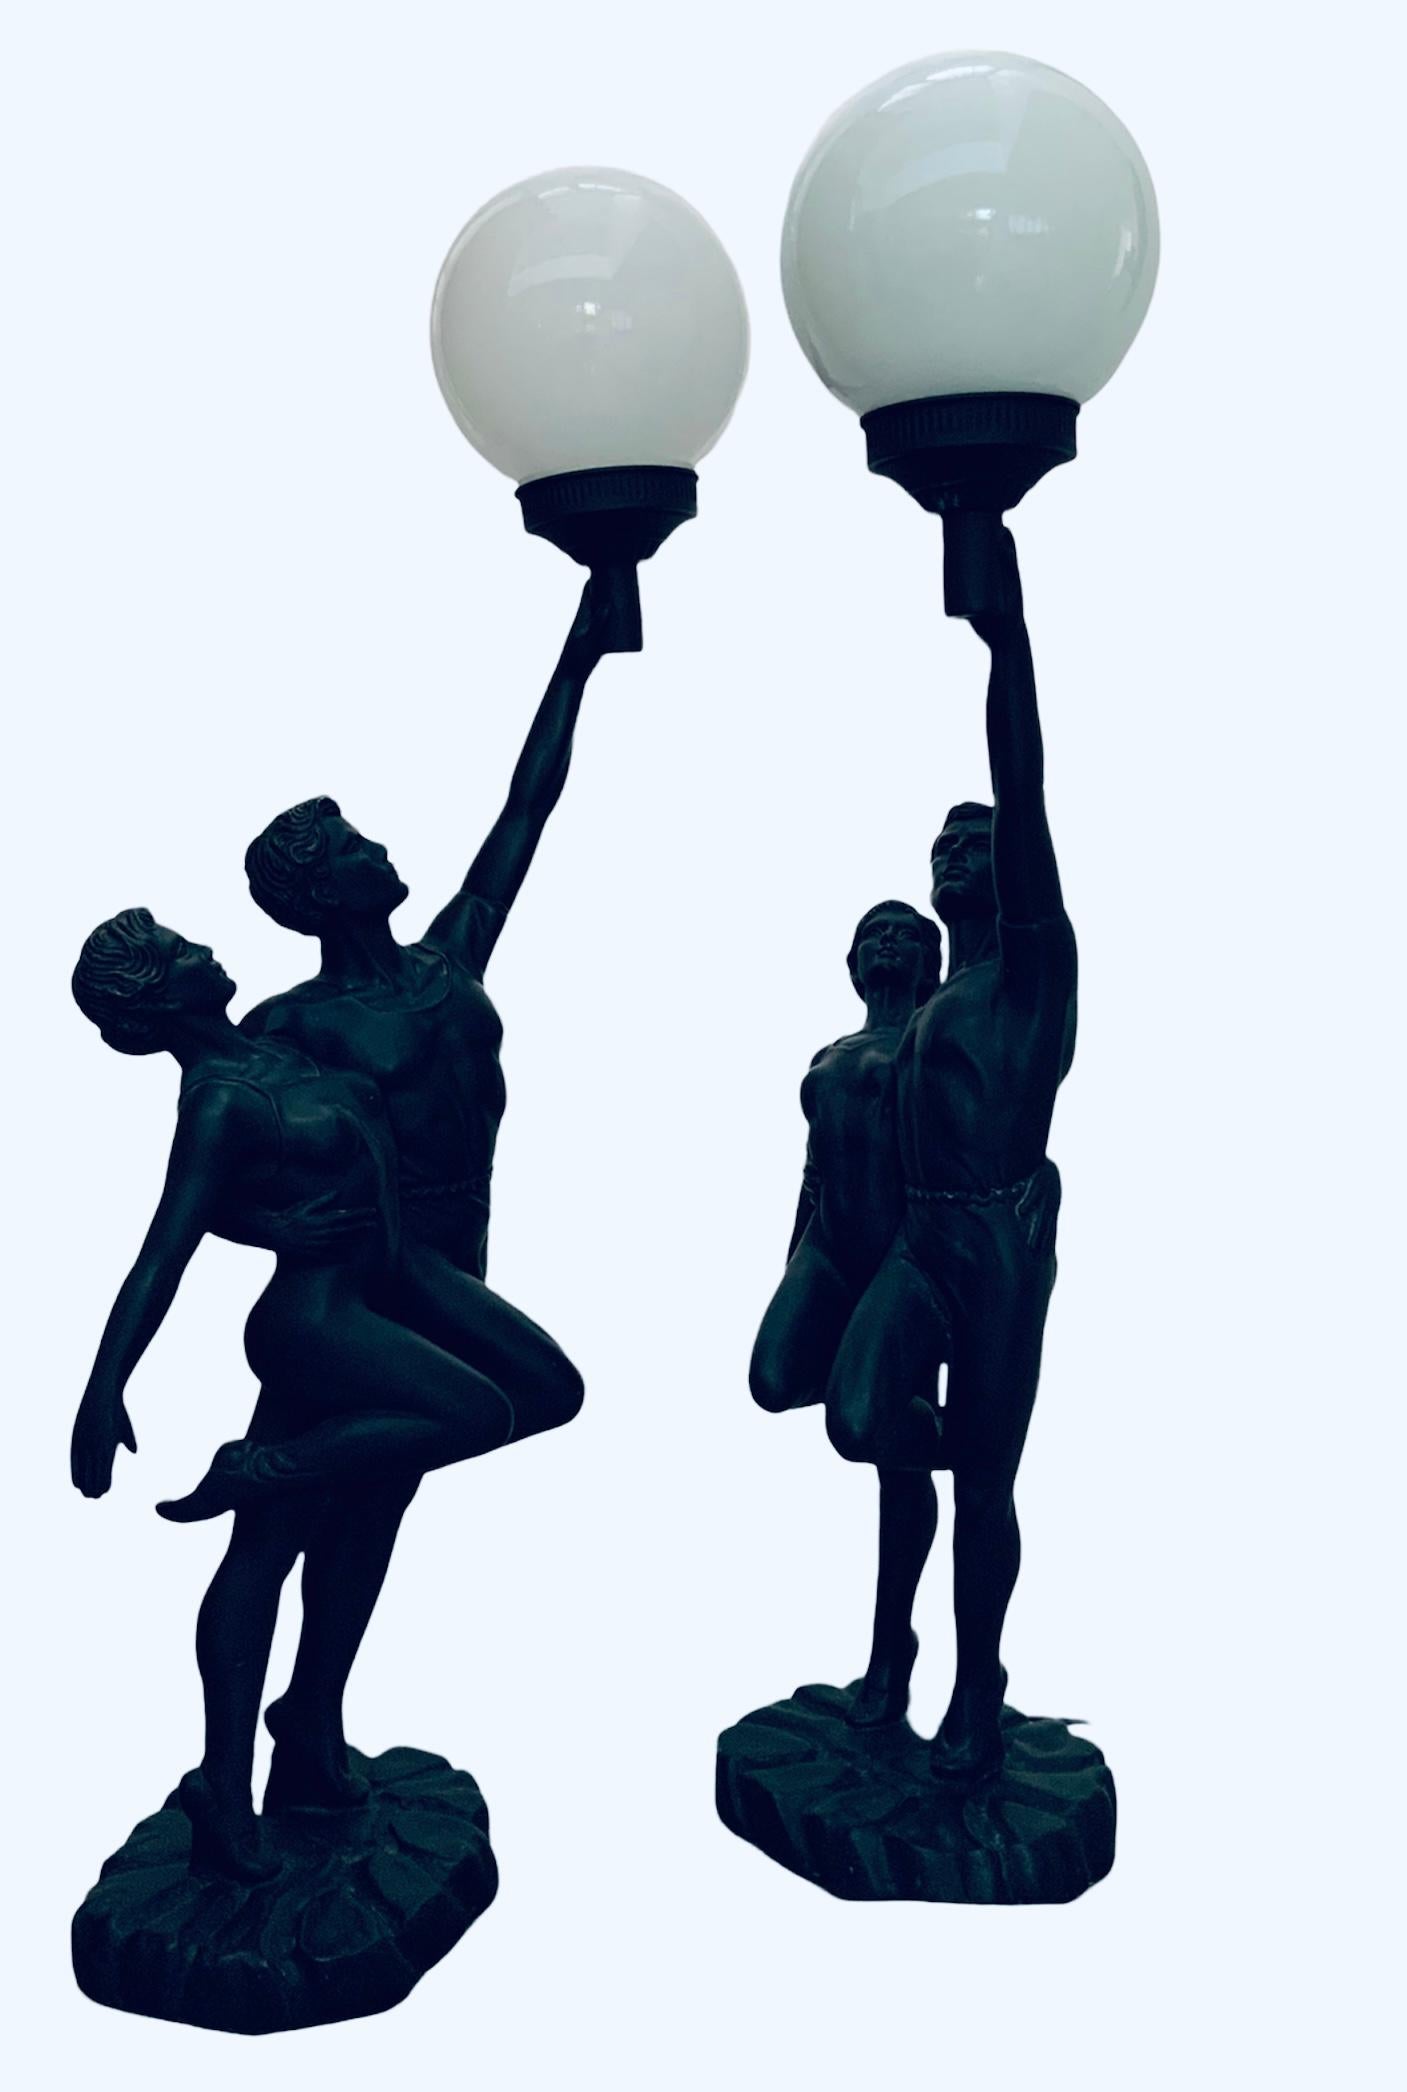 Il s'agit d'une paire de sculptures en résine Crosa de 1993 représentant un couple de danseurs/gymnastes. Ils représentent une jeune femme et un jeune homme se tenant par le dos dans une position permettant d'entamer une danse ou une compétition.